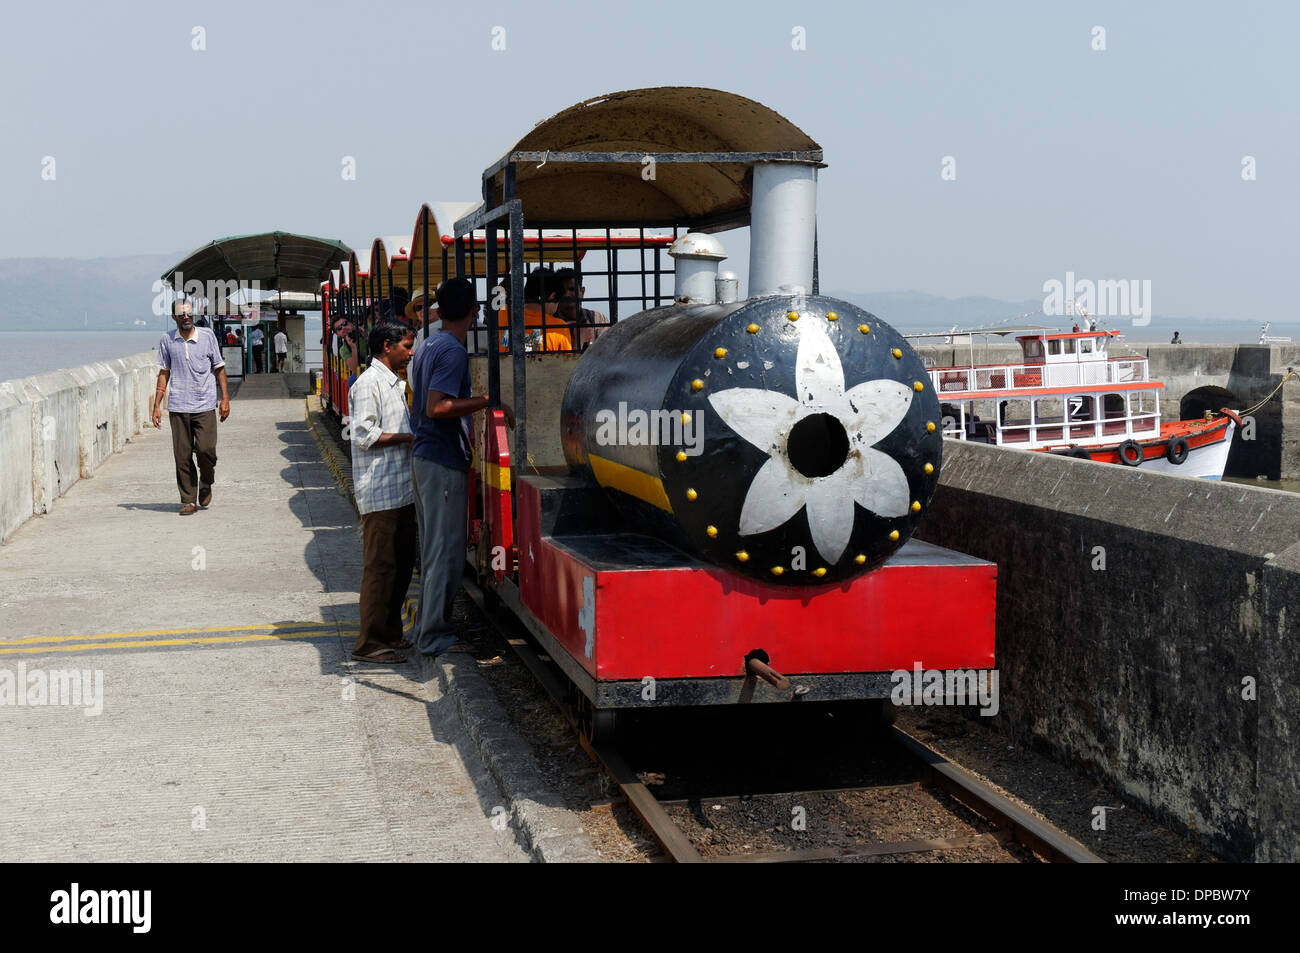 Der kleine Zug auf Elephanta-Insel in der Nähe von Mumbai (Bombay), Indien Stockfoto